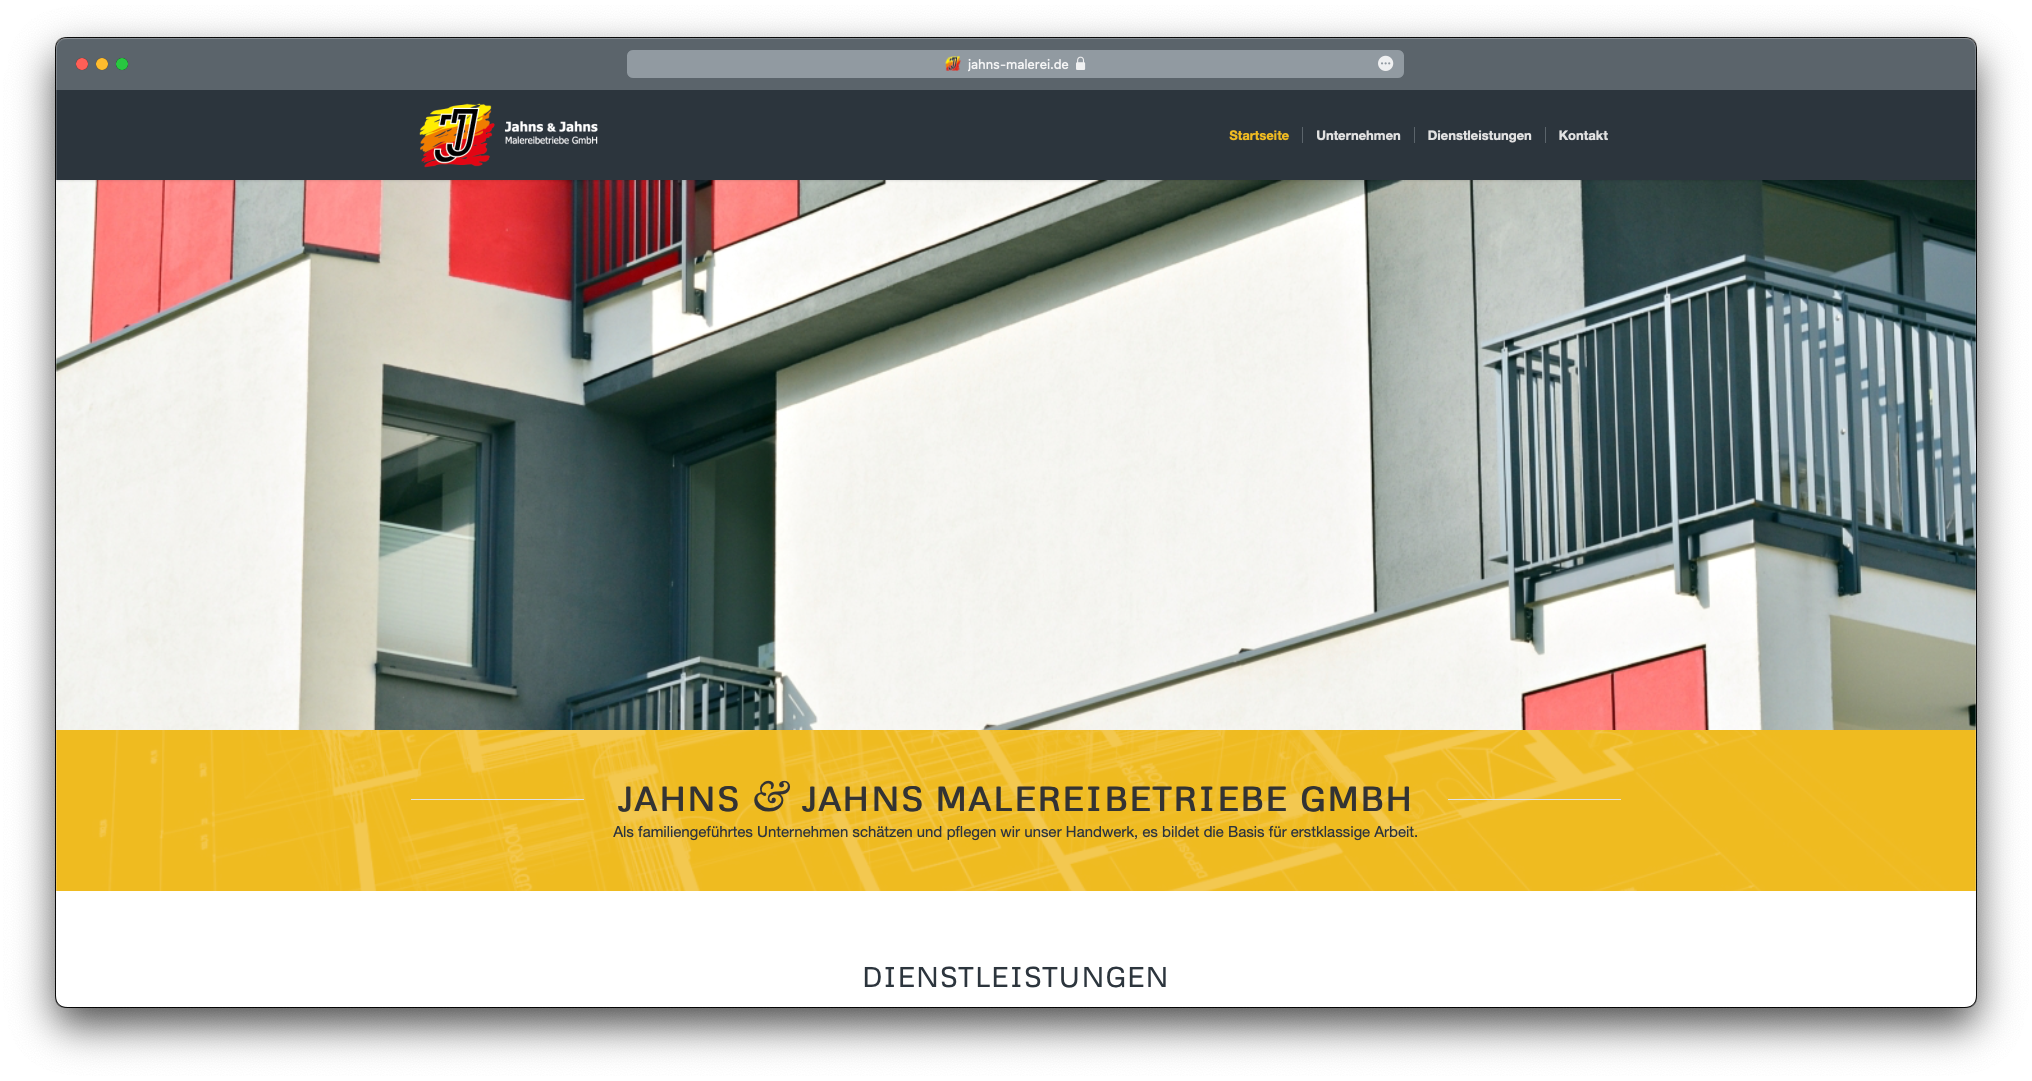 Jahns & Jahns Malereibetriebe GmbH